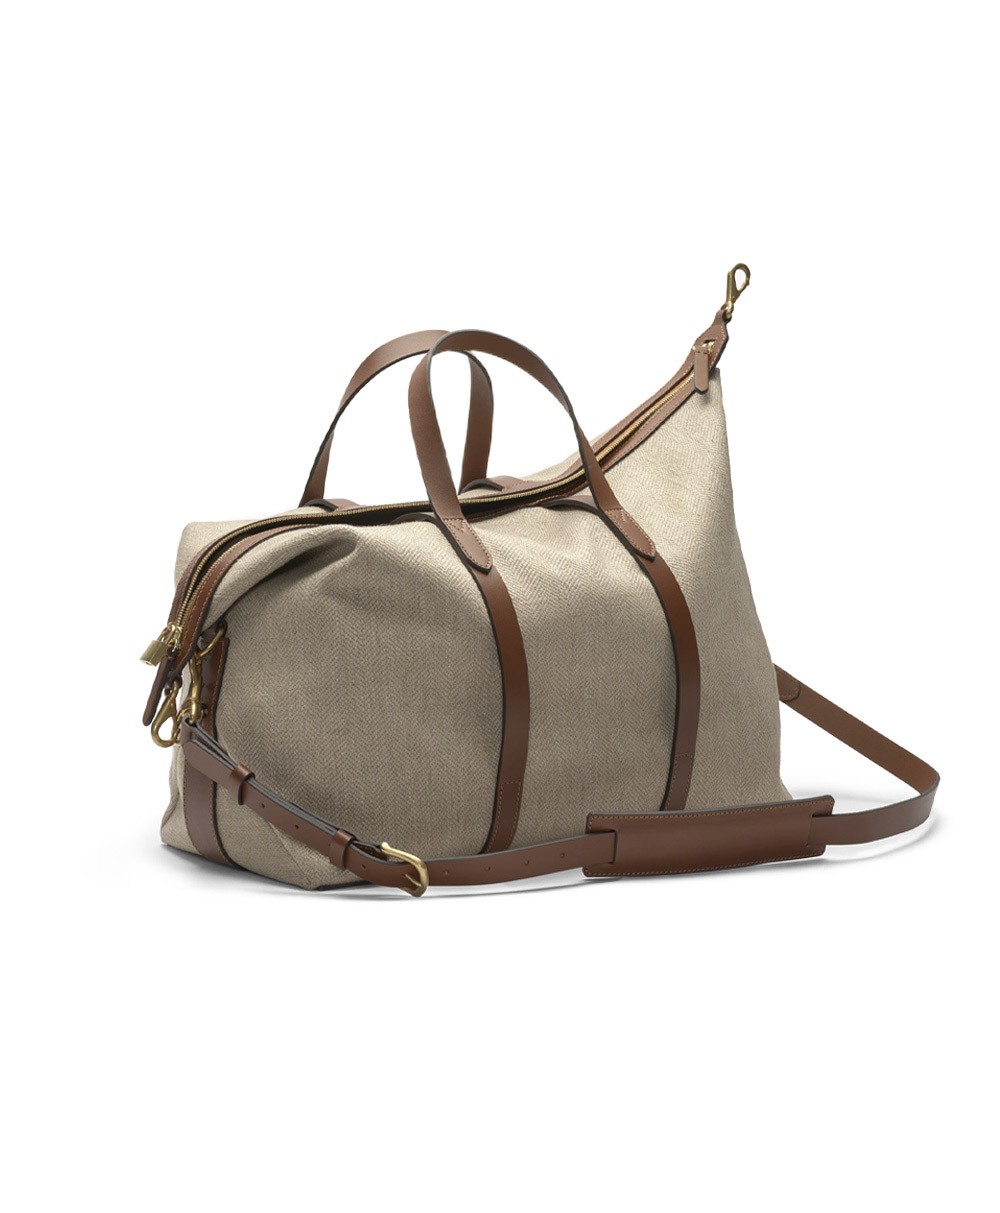 Produktbild der Tasche Avail von Mismo im RAUM concept store 